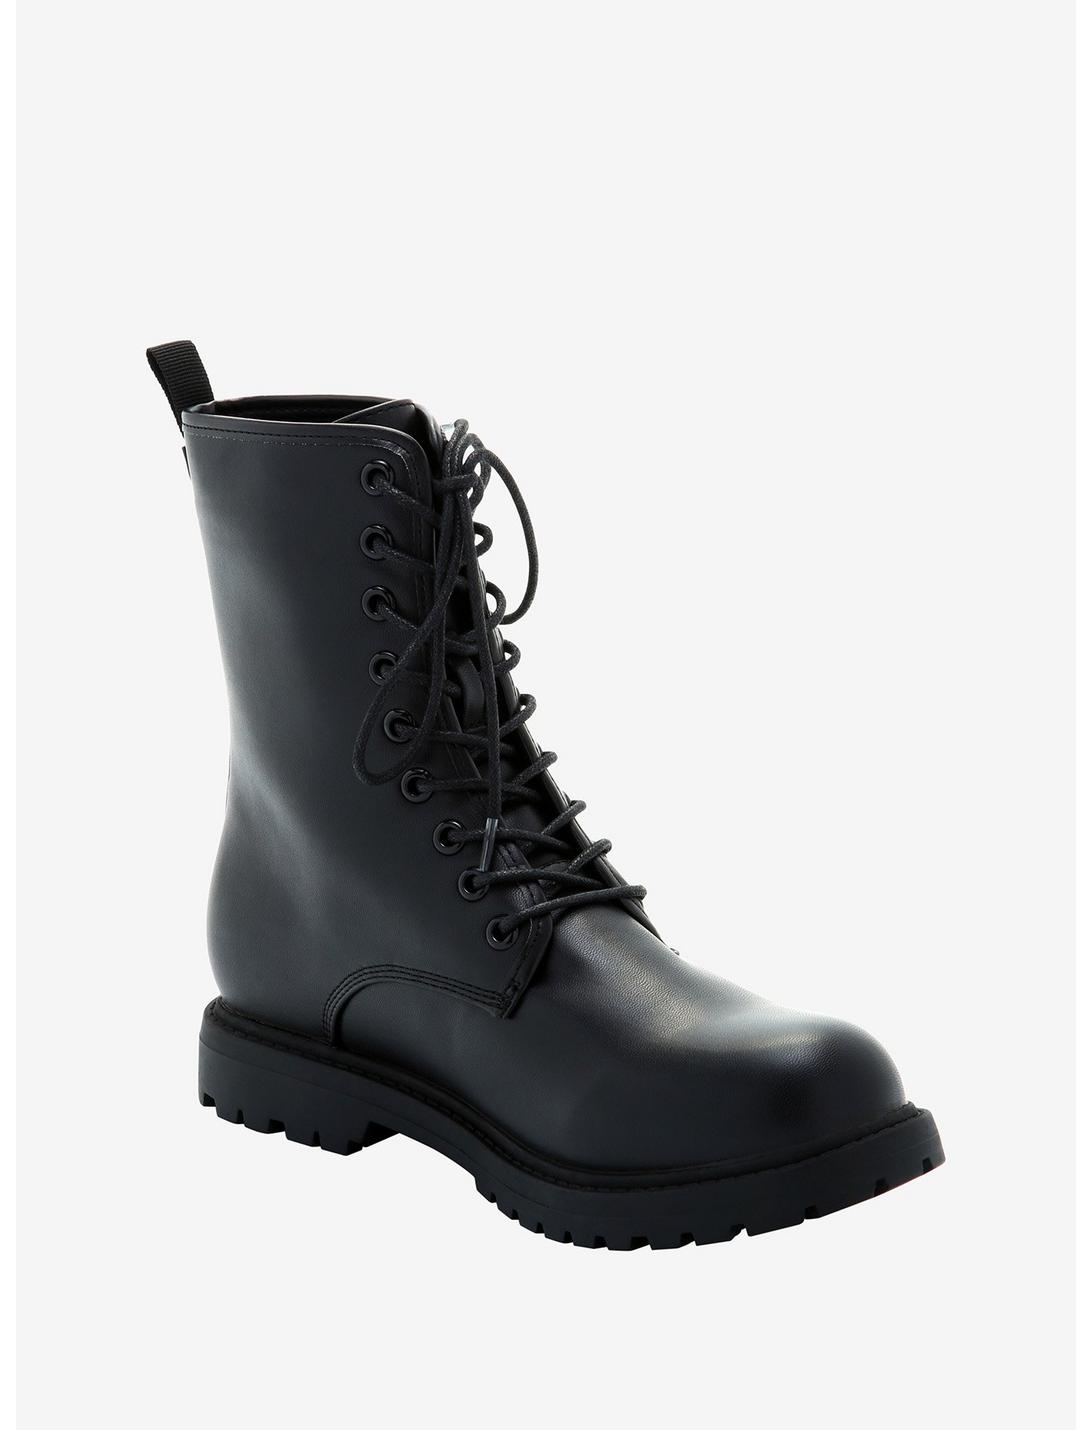 Black Combat Boots, MULTI, hi-res